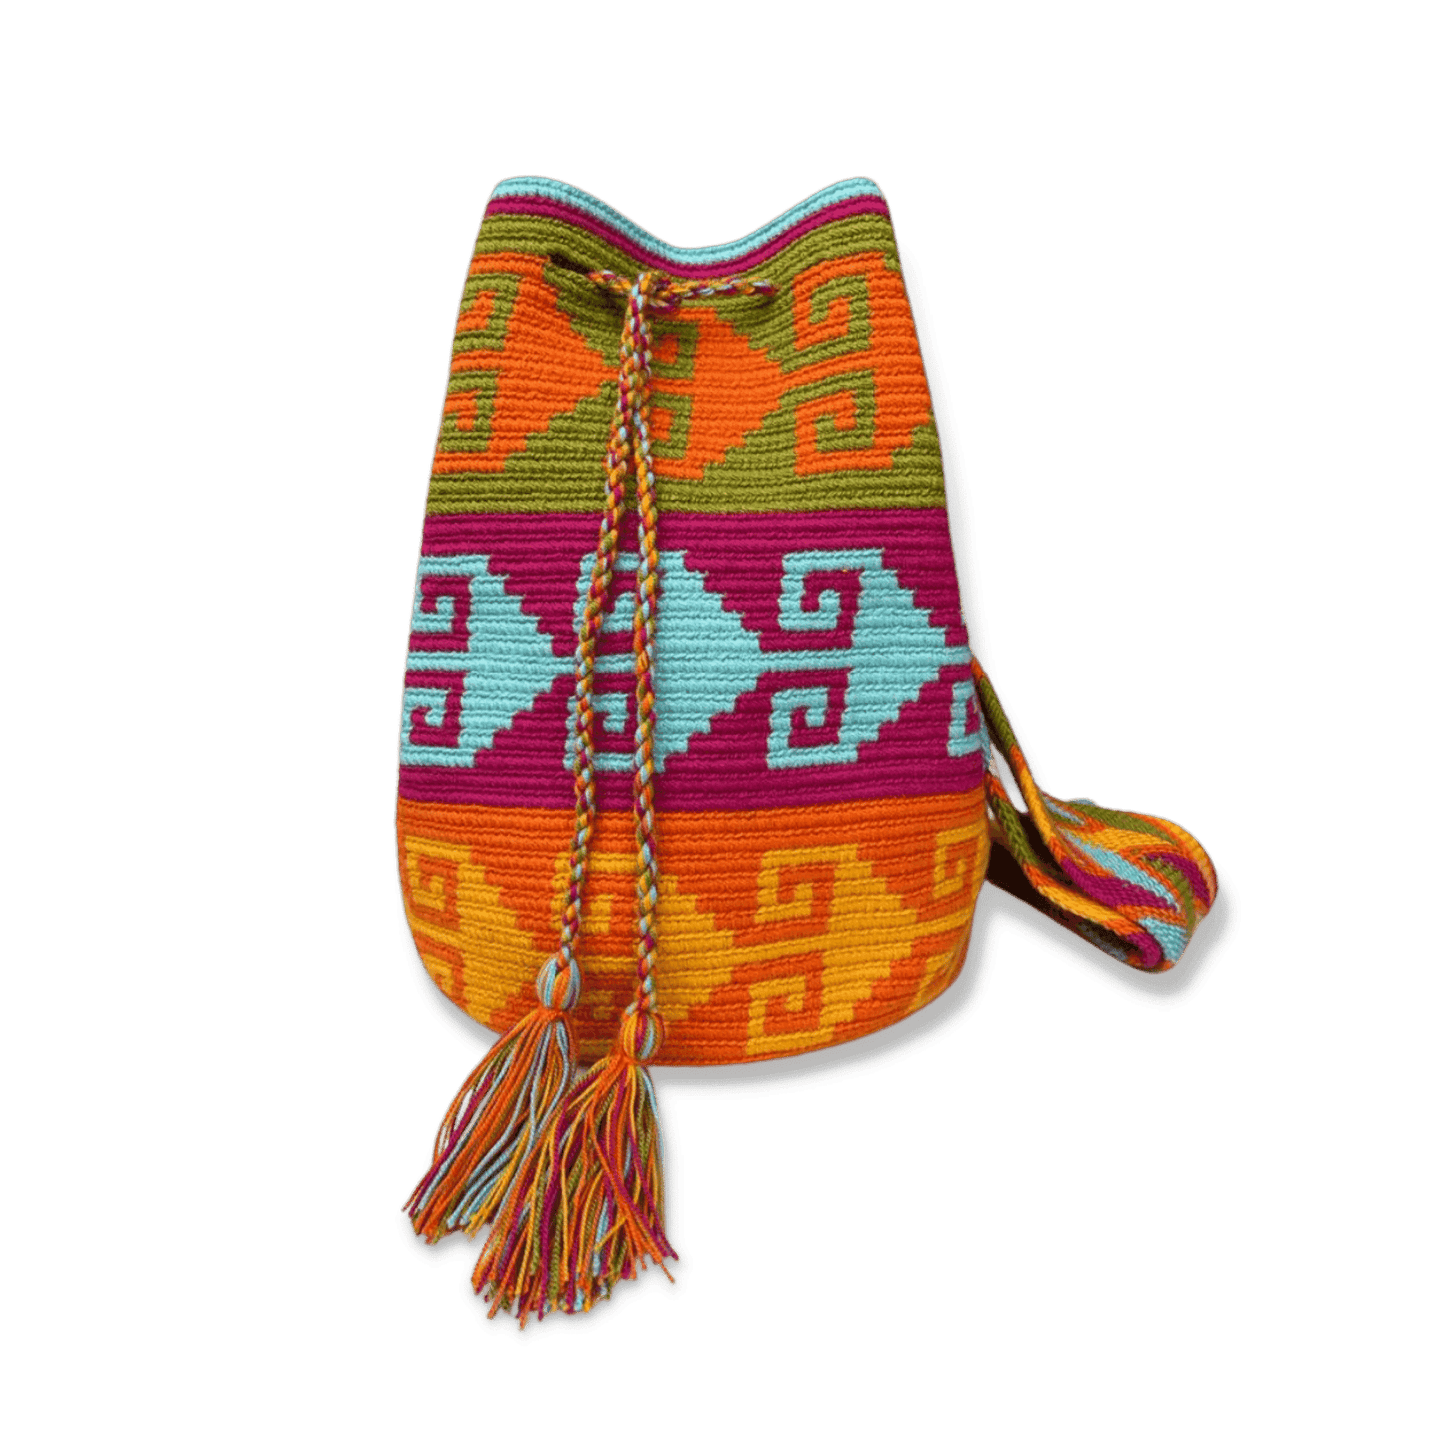 Mochila wayuu tejida a mano con un diseño precolombino de colores vivos y pasteles